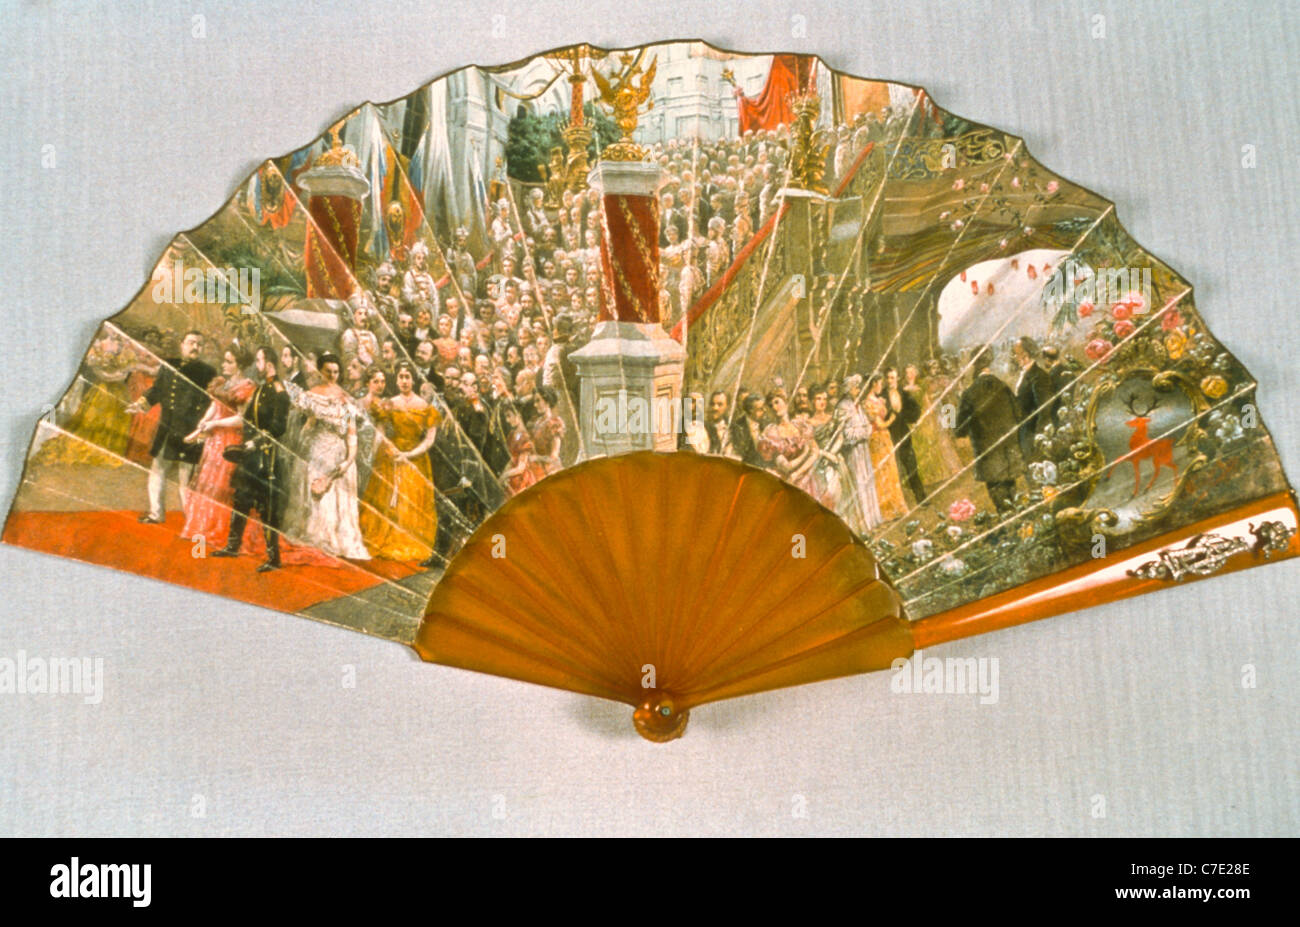 Représentant l'Empereur Nicolas II de ventilateur et de l'impératrice Alexandra Feodorovna partie des joyaux de l'exposition de Romanov cinq muse russe Banque D'Images